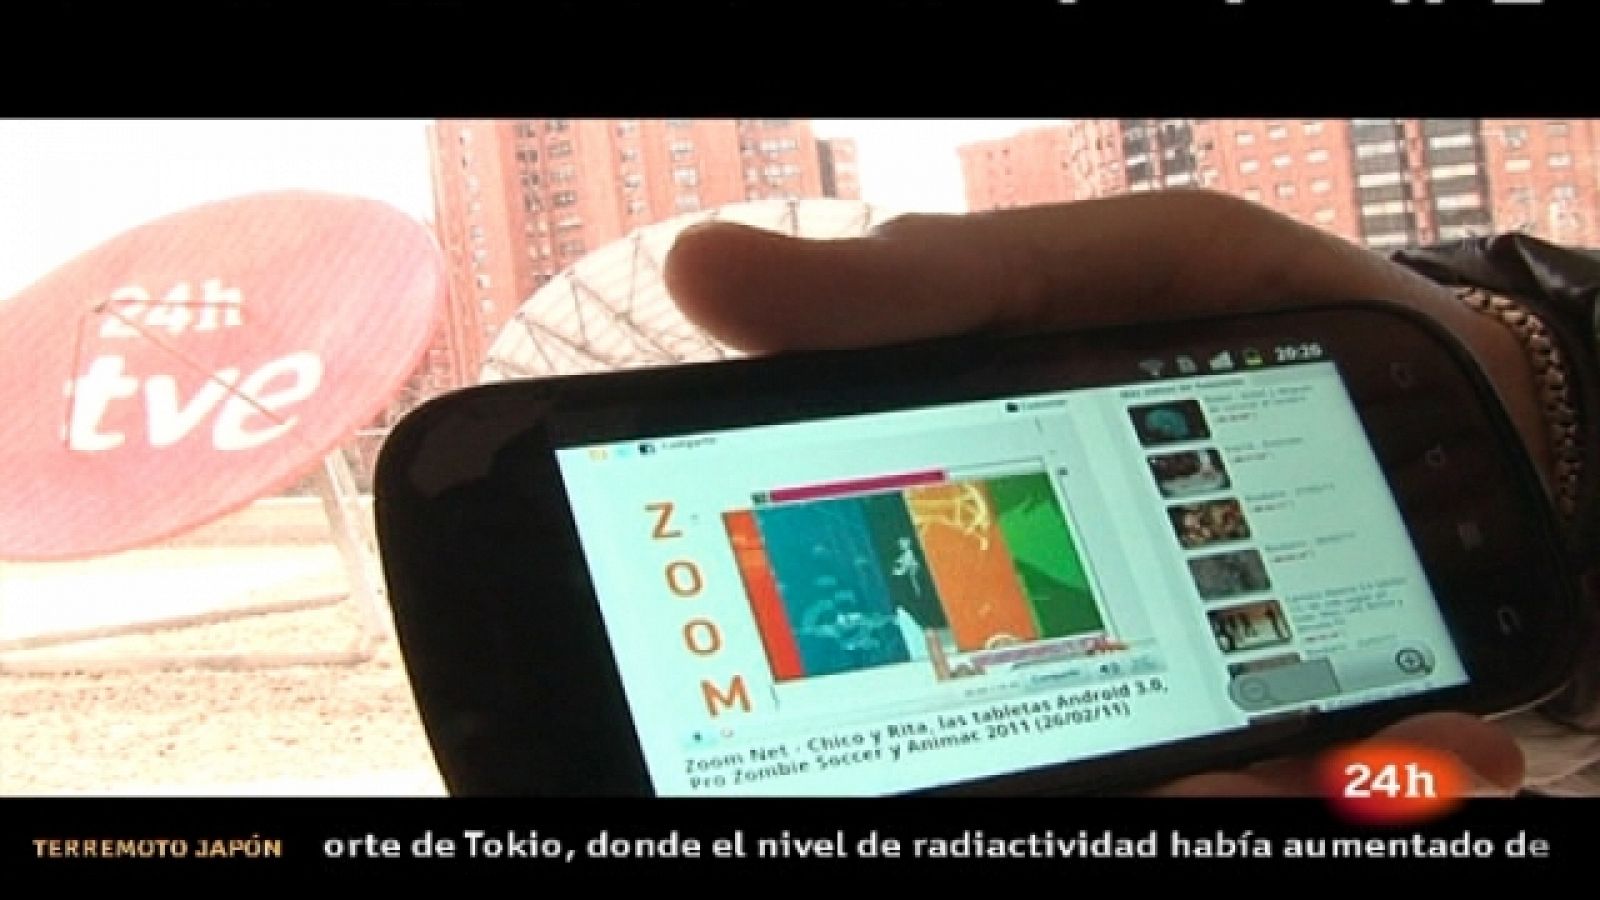 Zoom Net - The App Date, Aula 2011, Google Nexus S y "MotorStorm Apocalypse" - 12/03/11